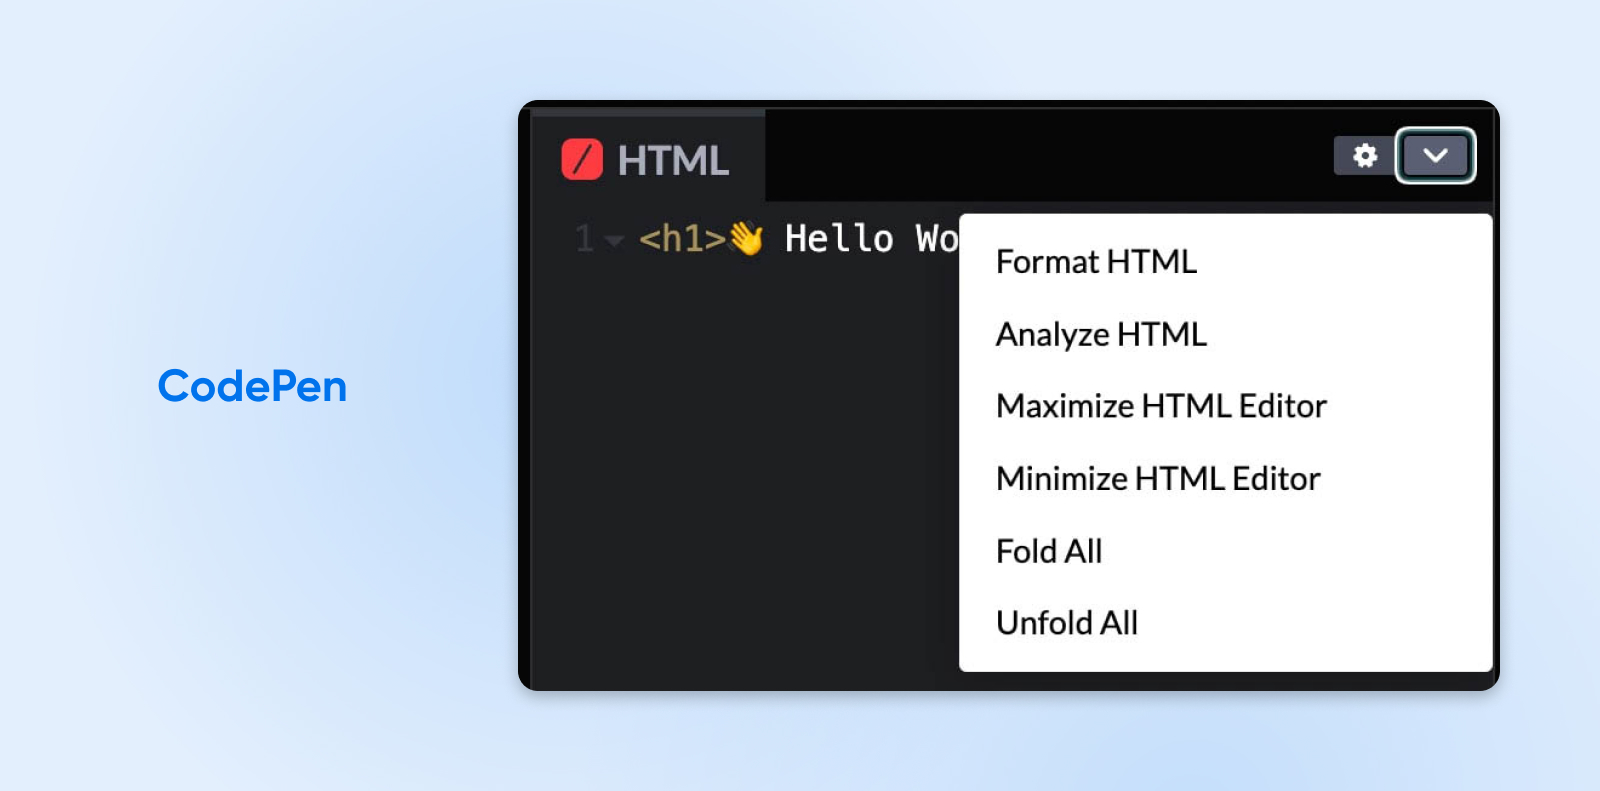 CodePen ofrece una herramienta llamada Analizar HTML para buscar errores de código